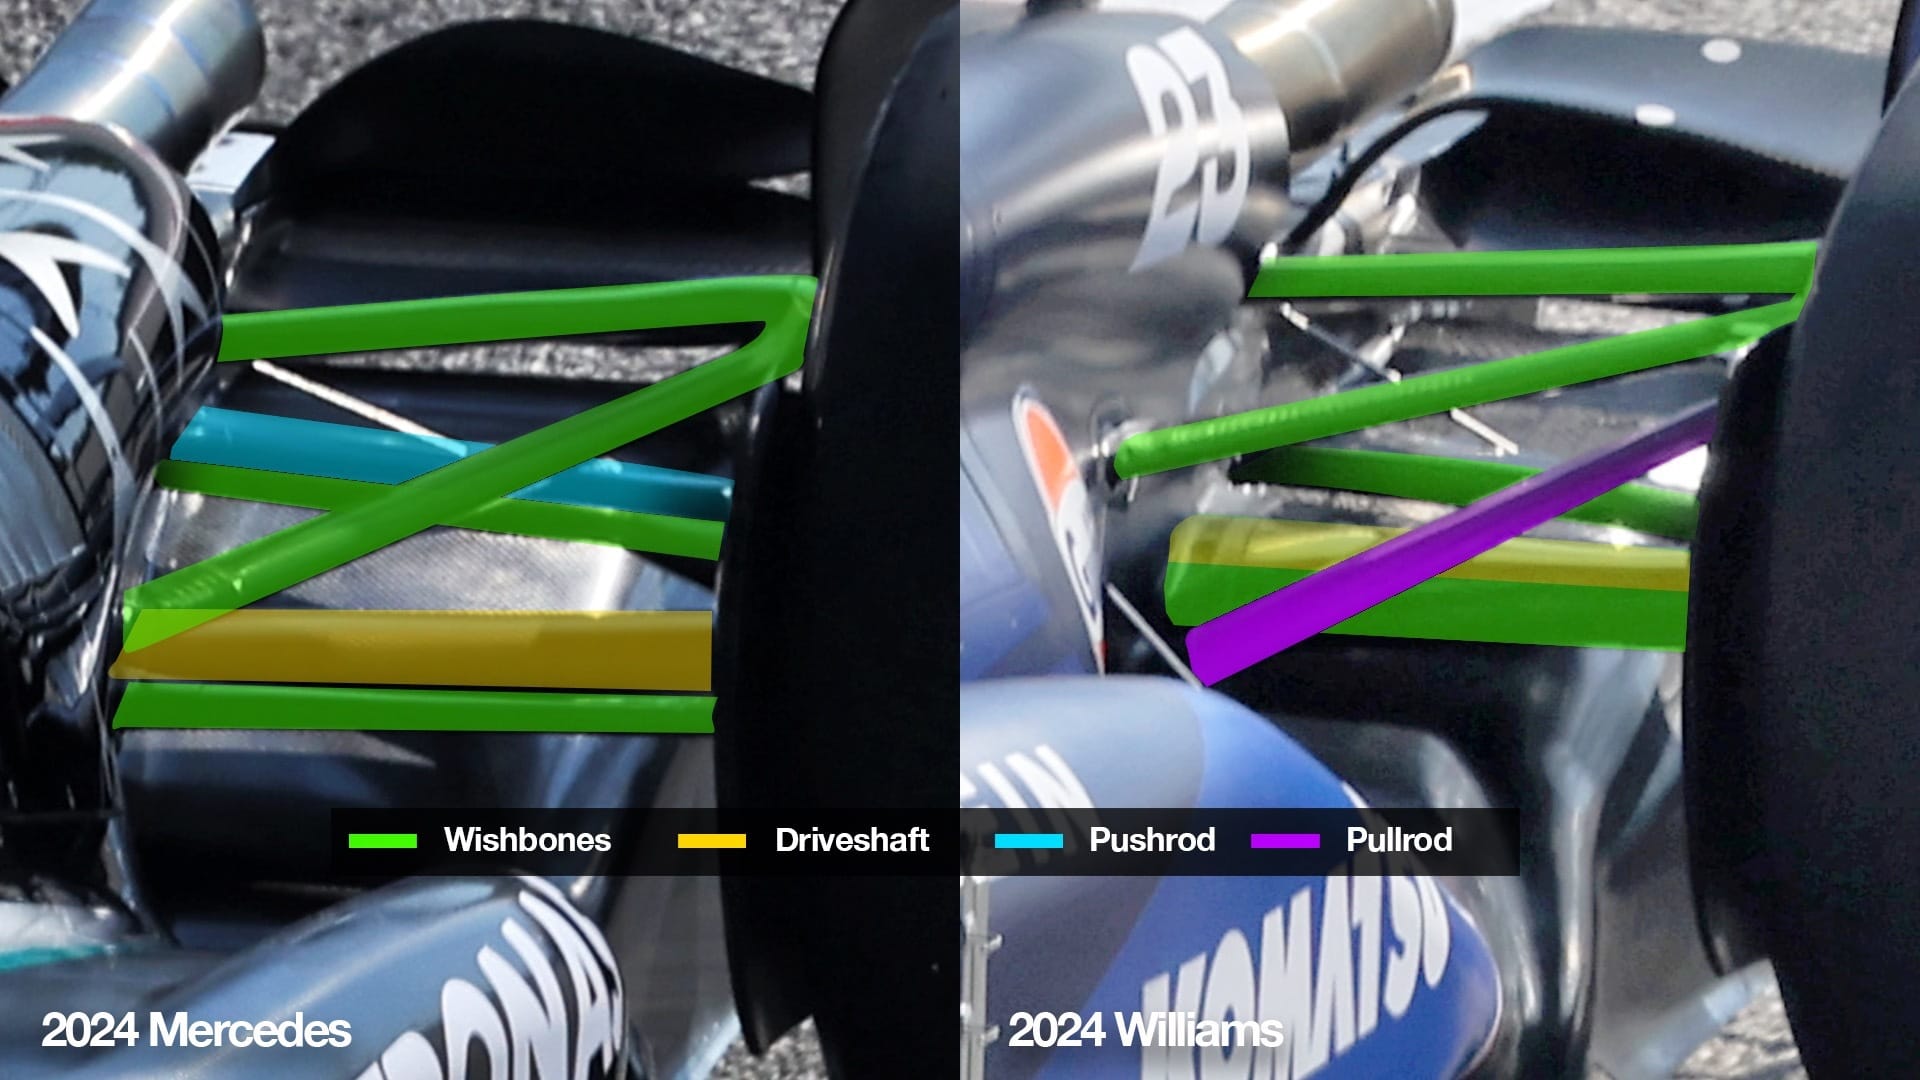 Mercedes and Williams rear suspension comparison